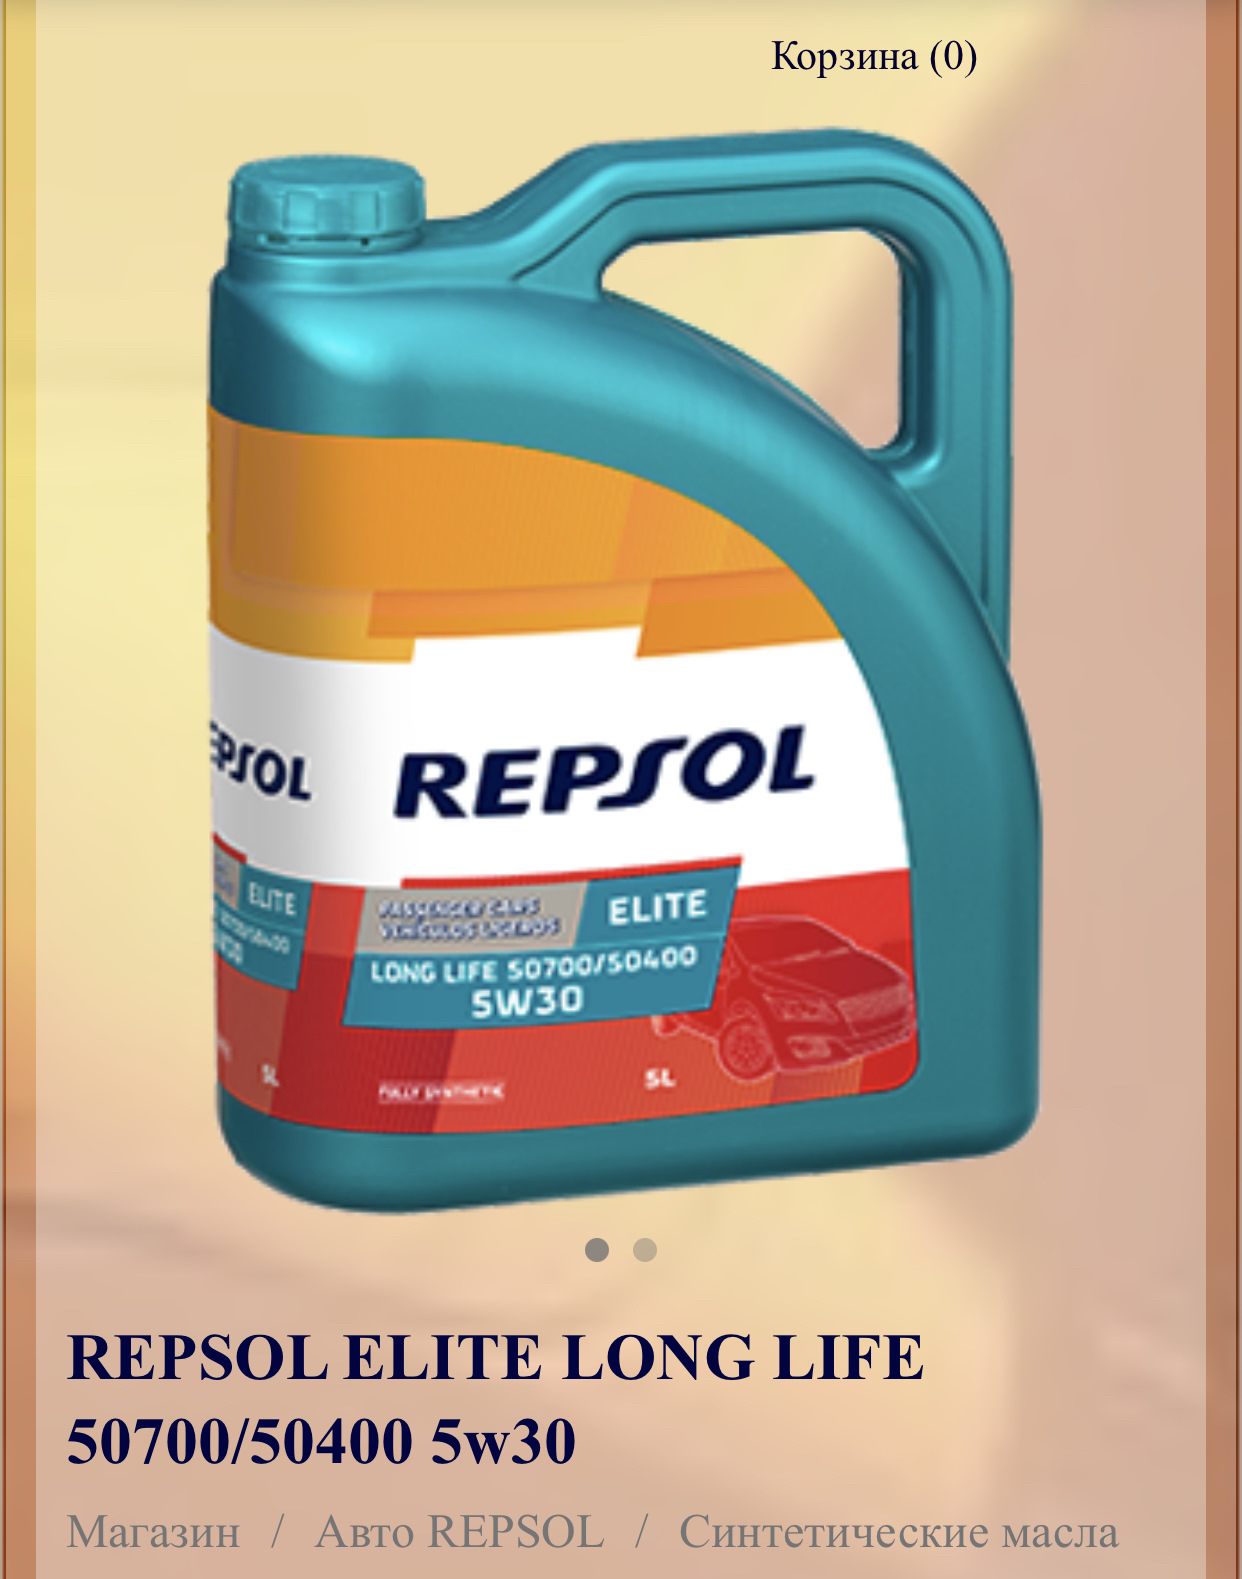 Масло repsol 5w30 elite. Repsol Elite long Life 50700/50400 5w30. Repsol Evolution long Life 5w30. Repsol Evolution 5w30. Repsol 5w30 504.